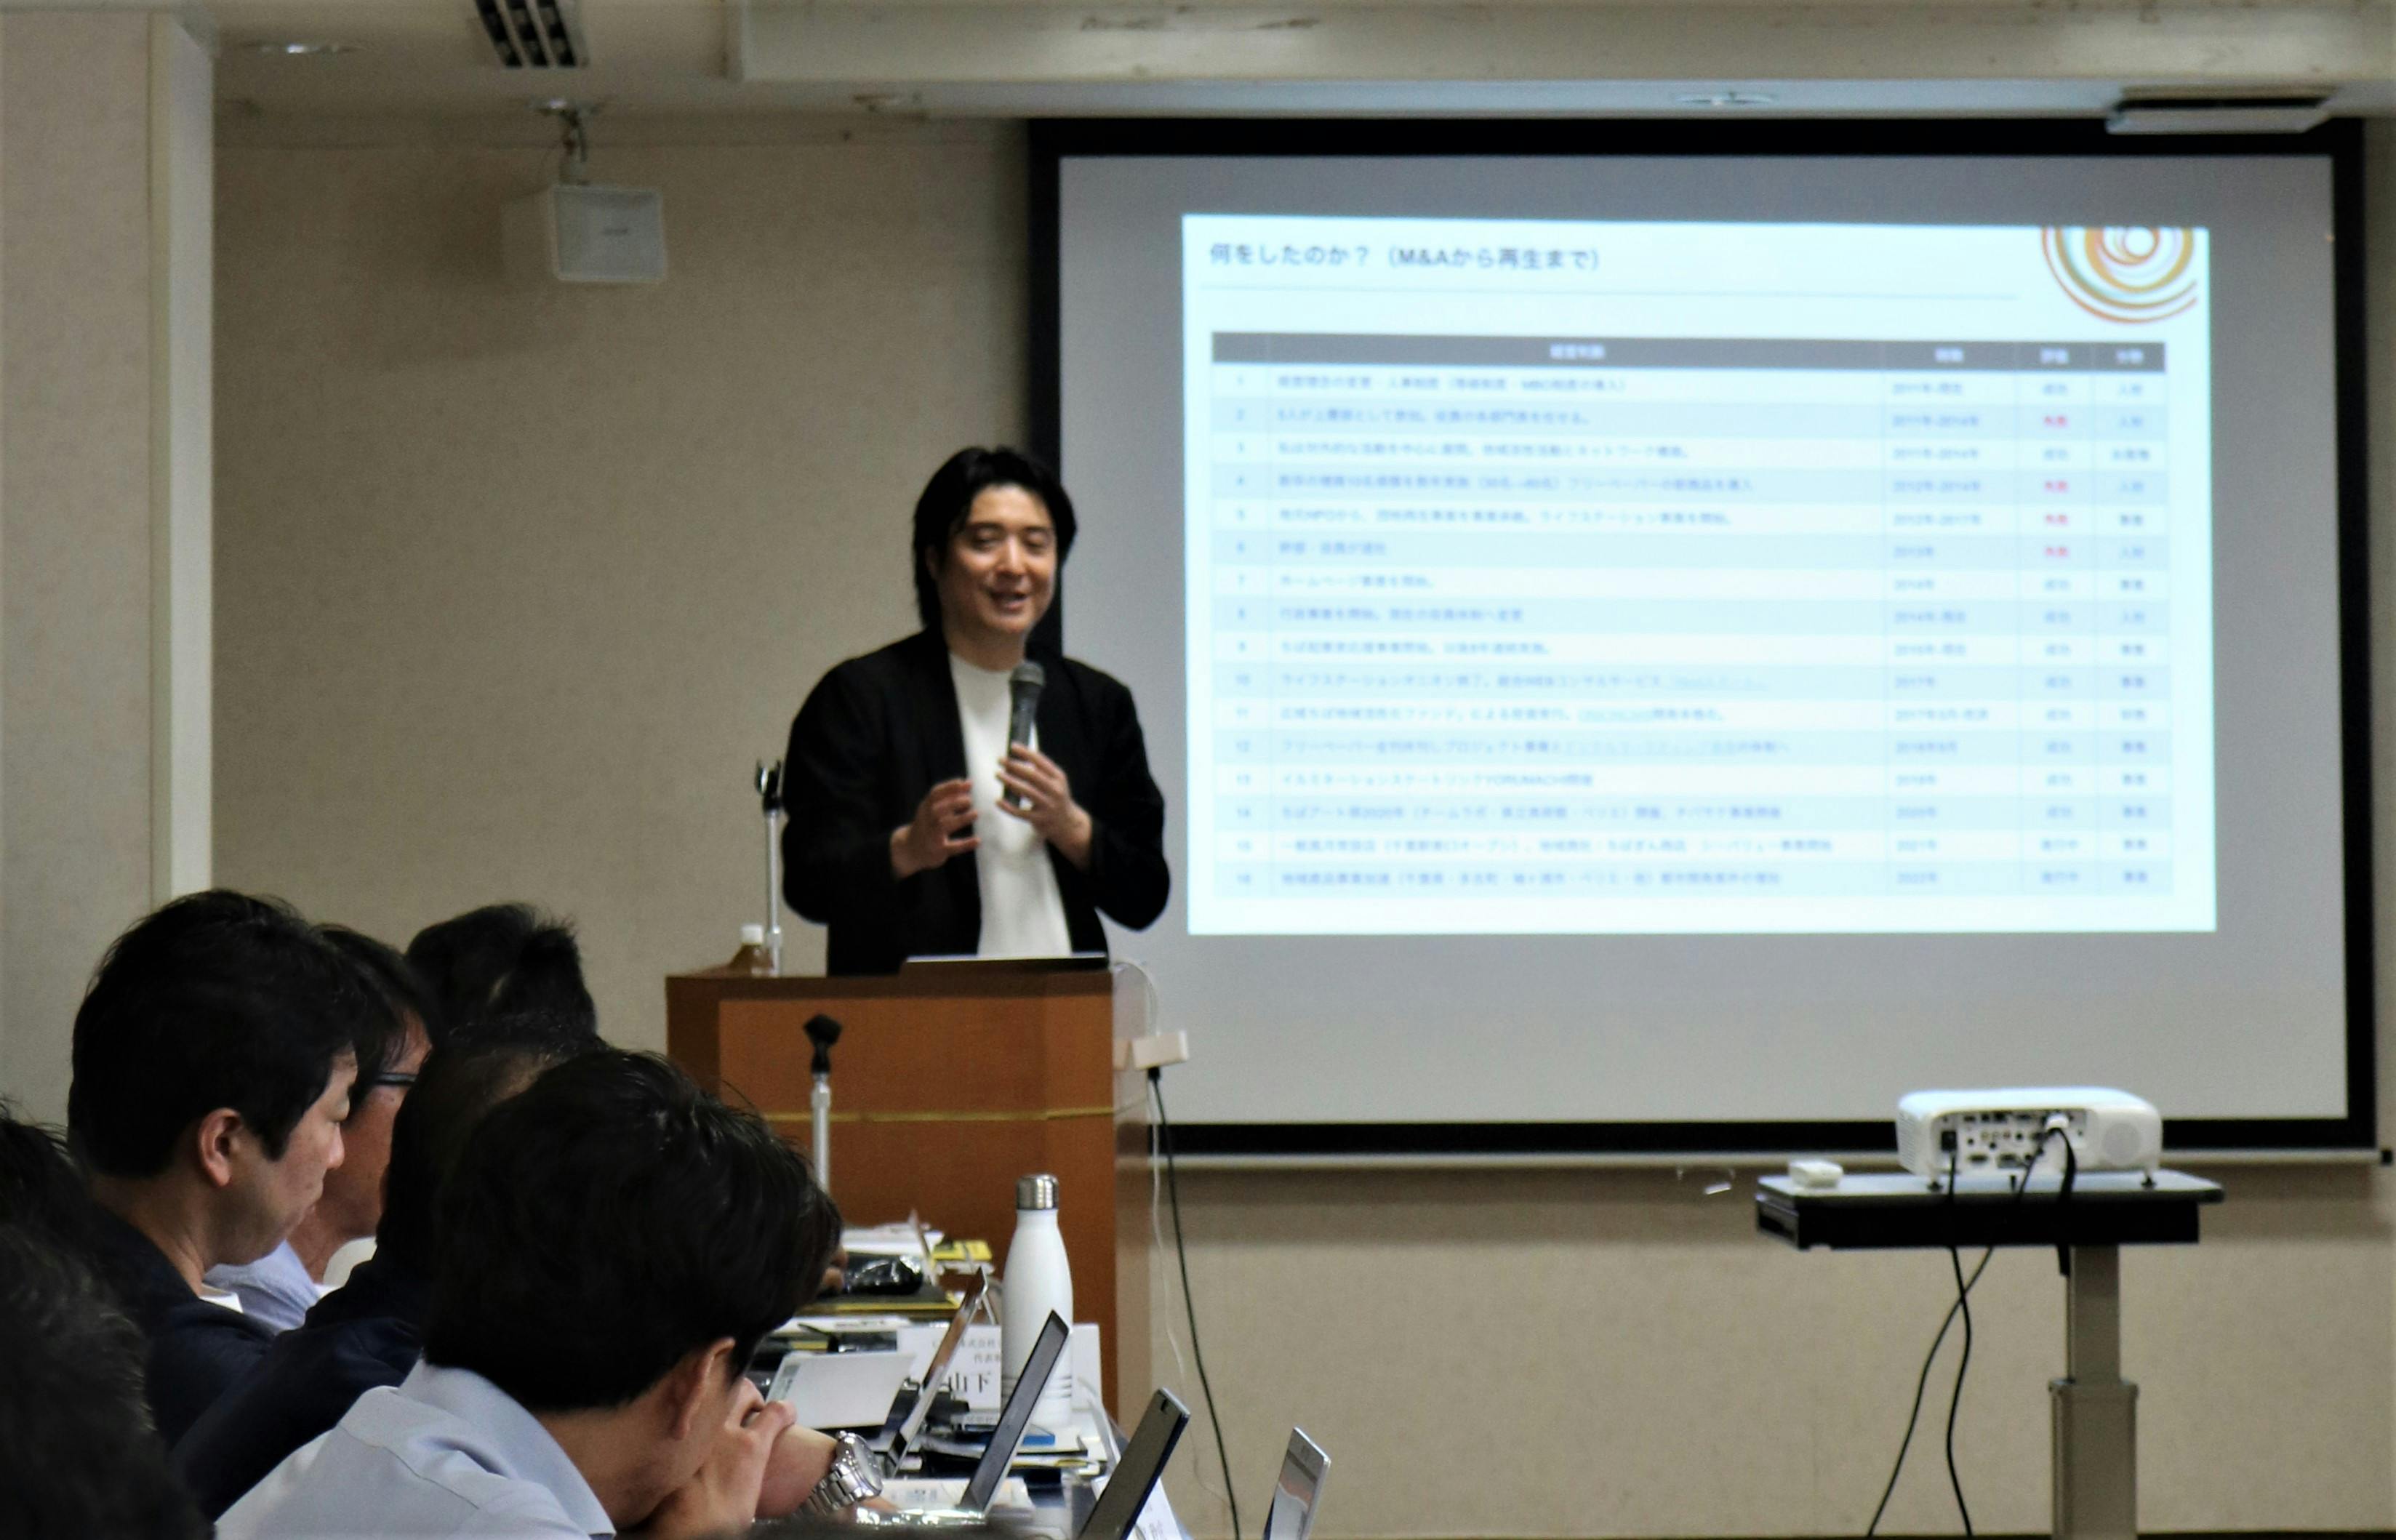 弊社代表 山本 寛が、「一般社団法人日本地域広告会社協会 関東甲信越ブロック会議」にて、講師として特別講演いたしました。